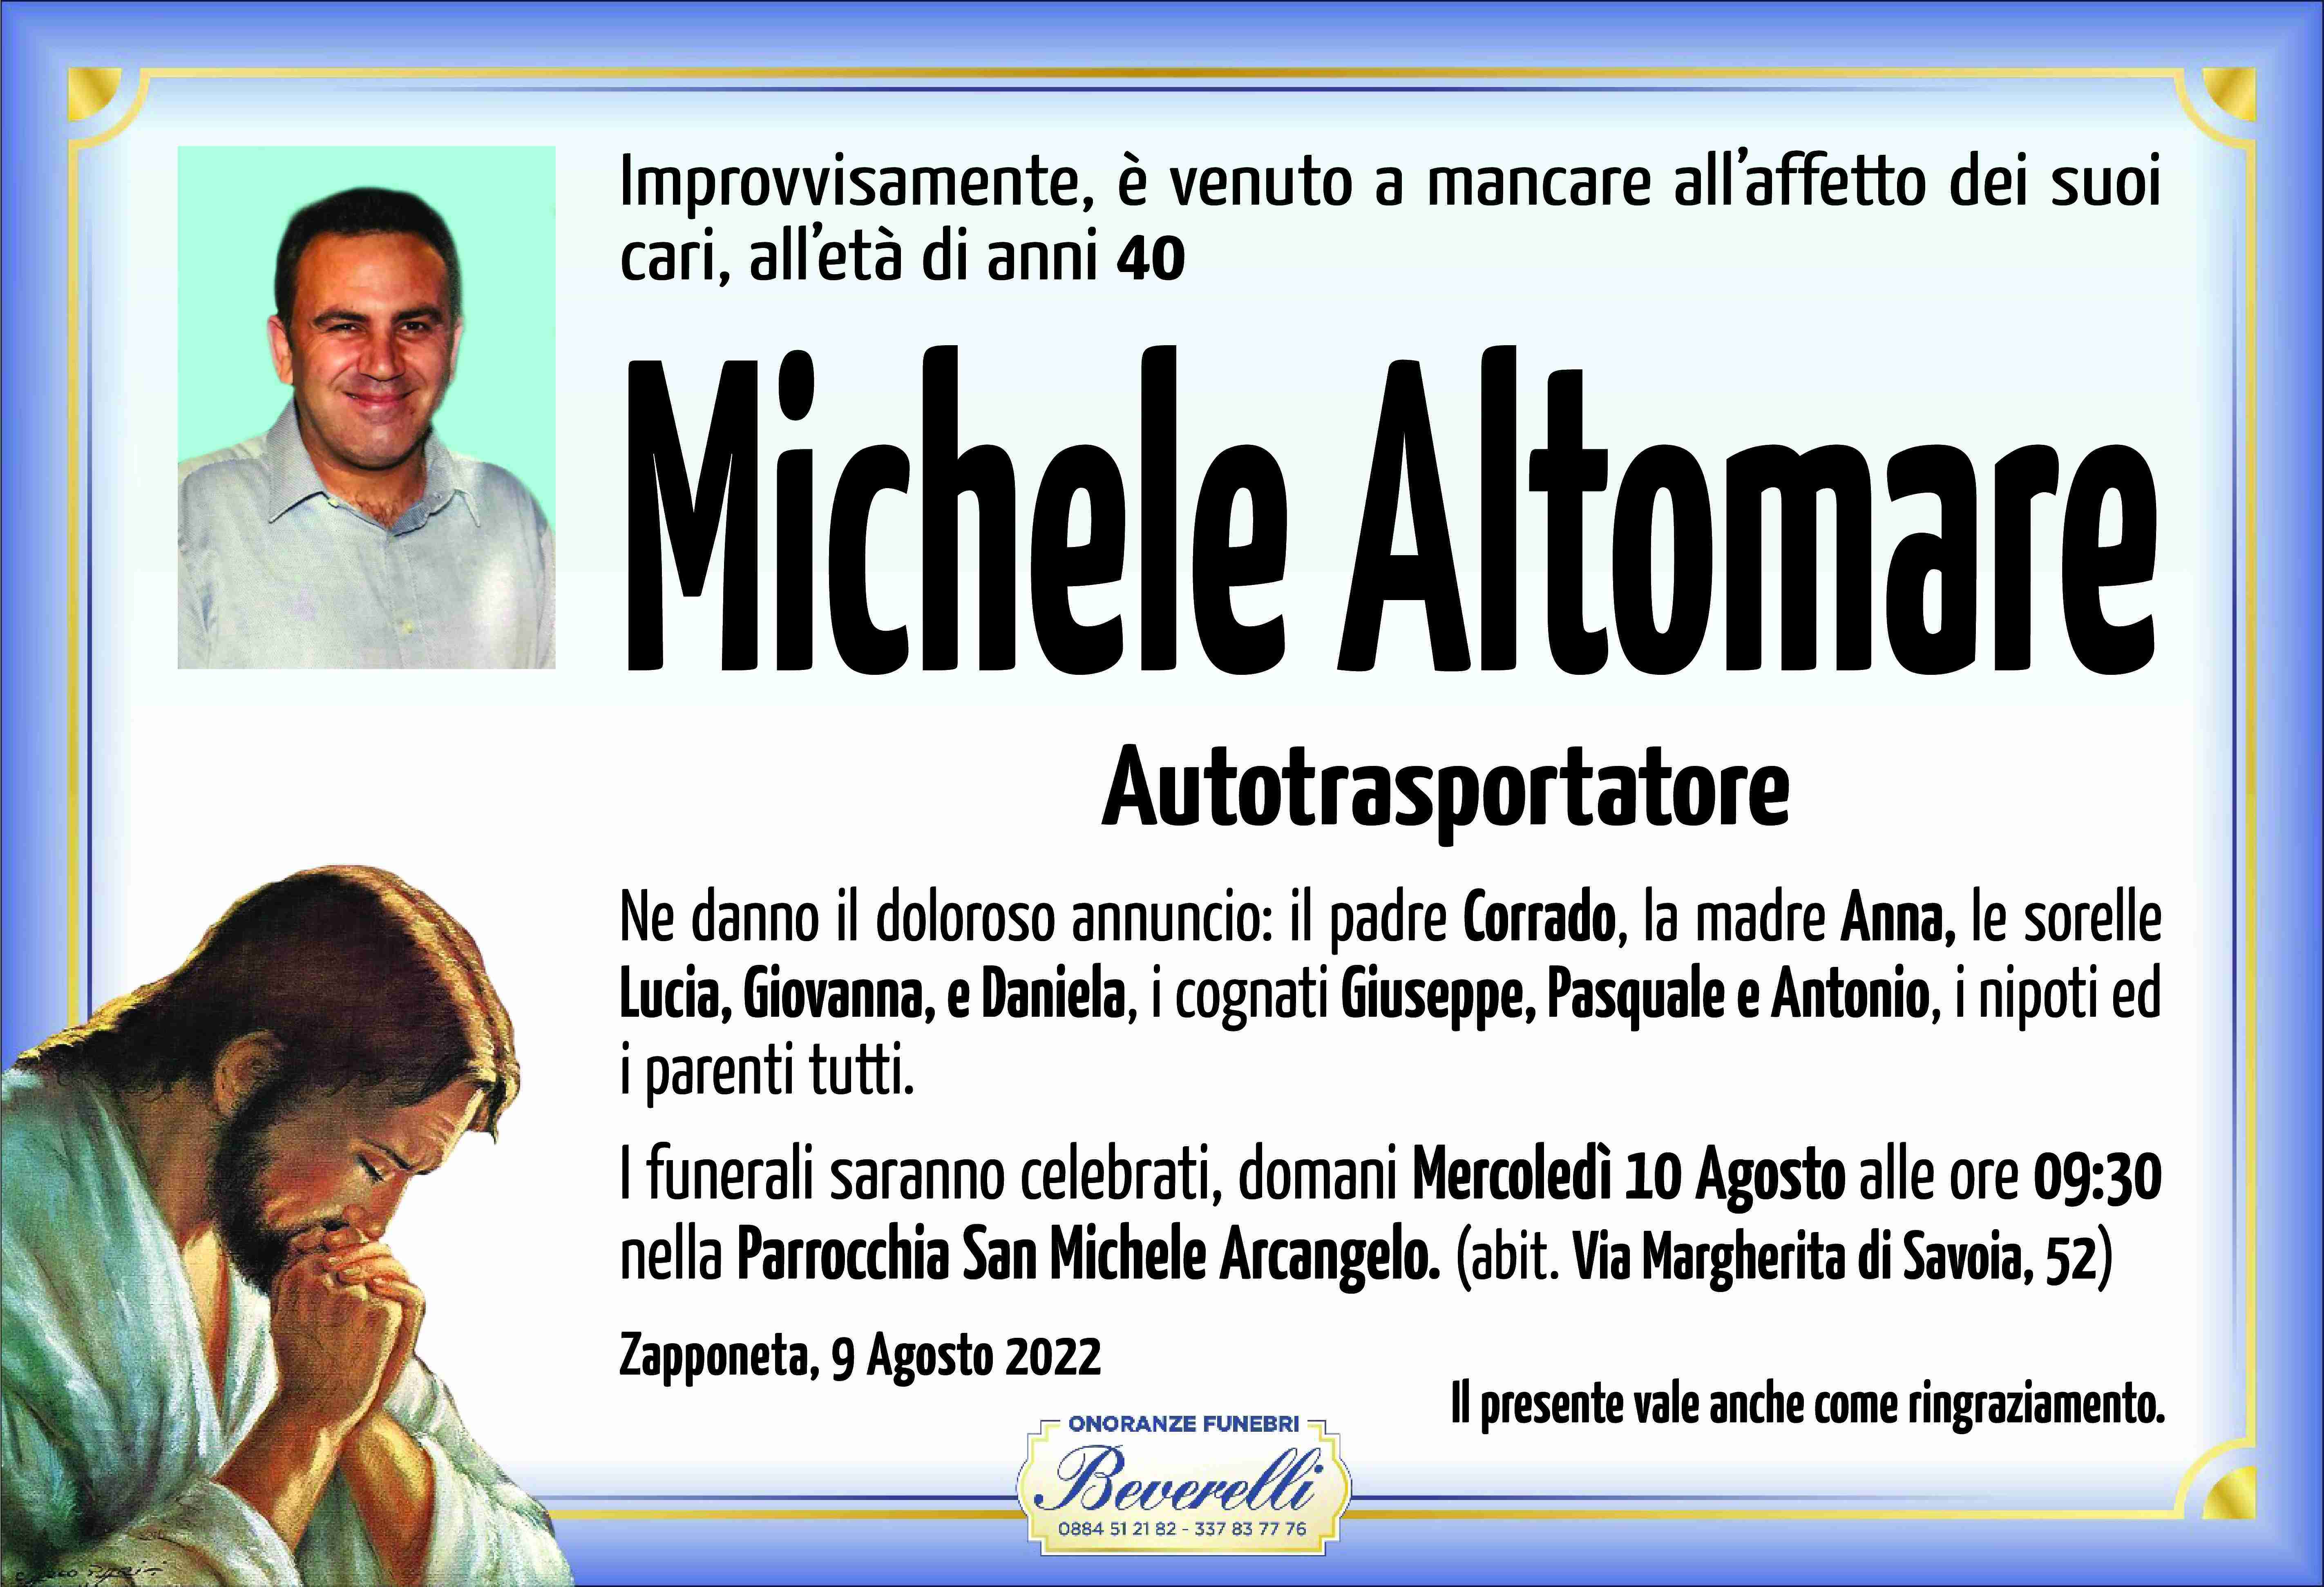 Michele Altomare